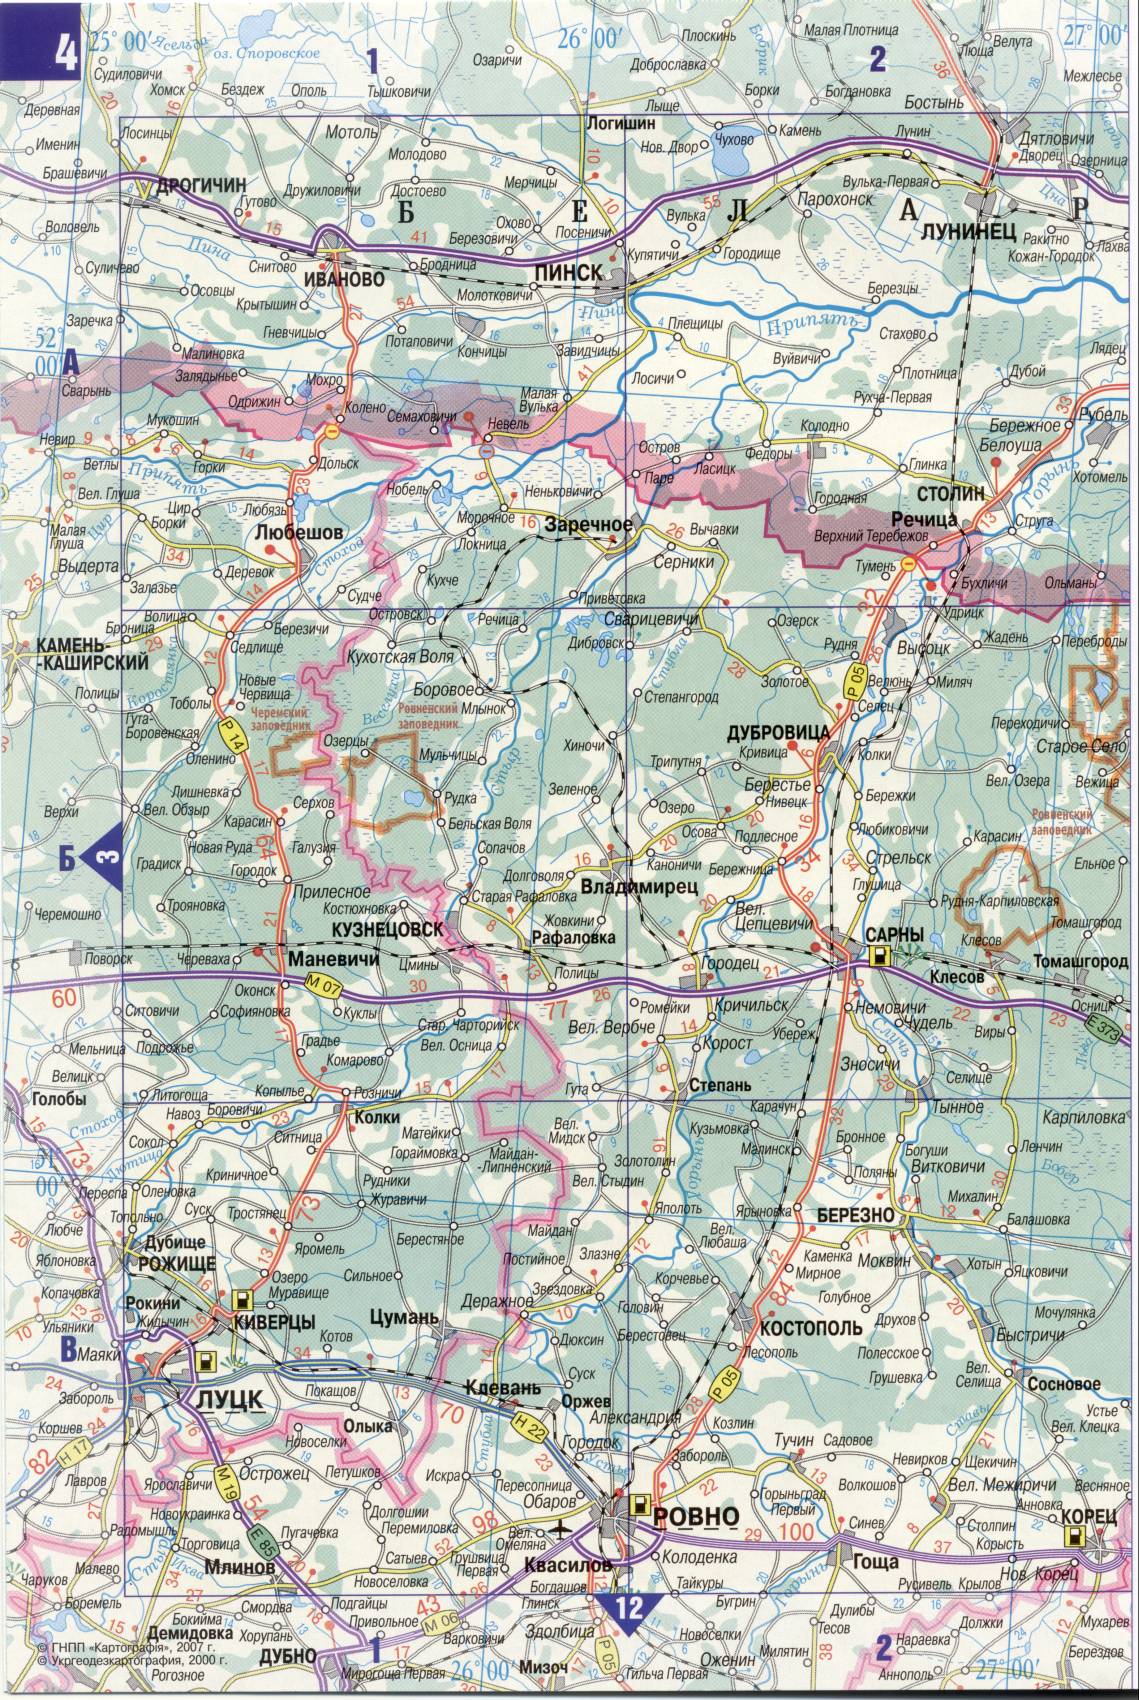 Карта Украины. Подробная карта дорог Украина из автомобильног атласа. скачать бесплатно, C0